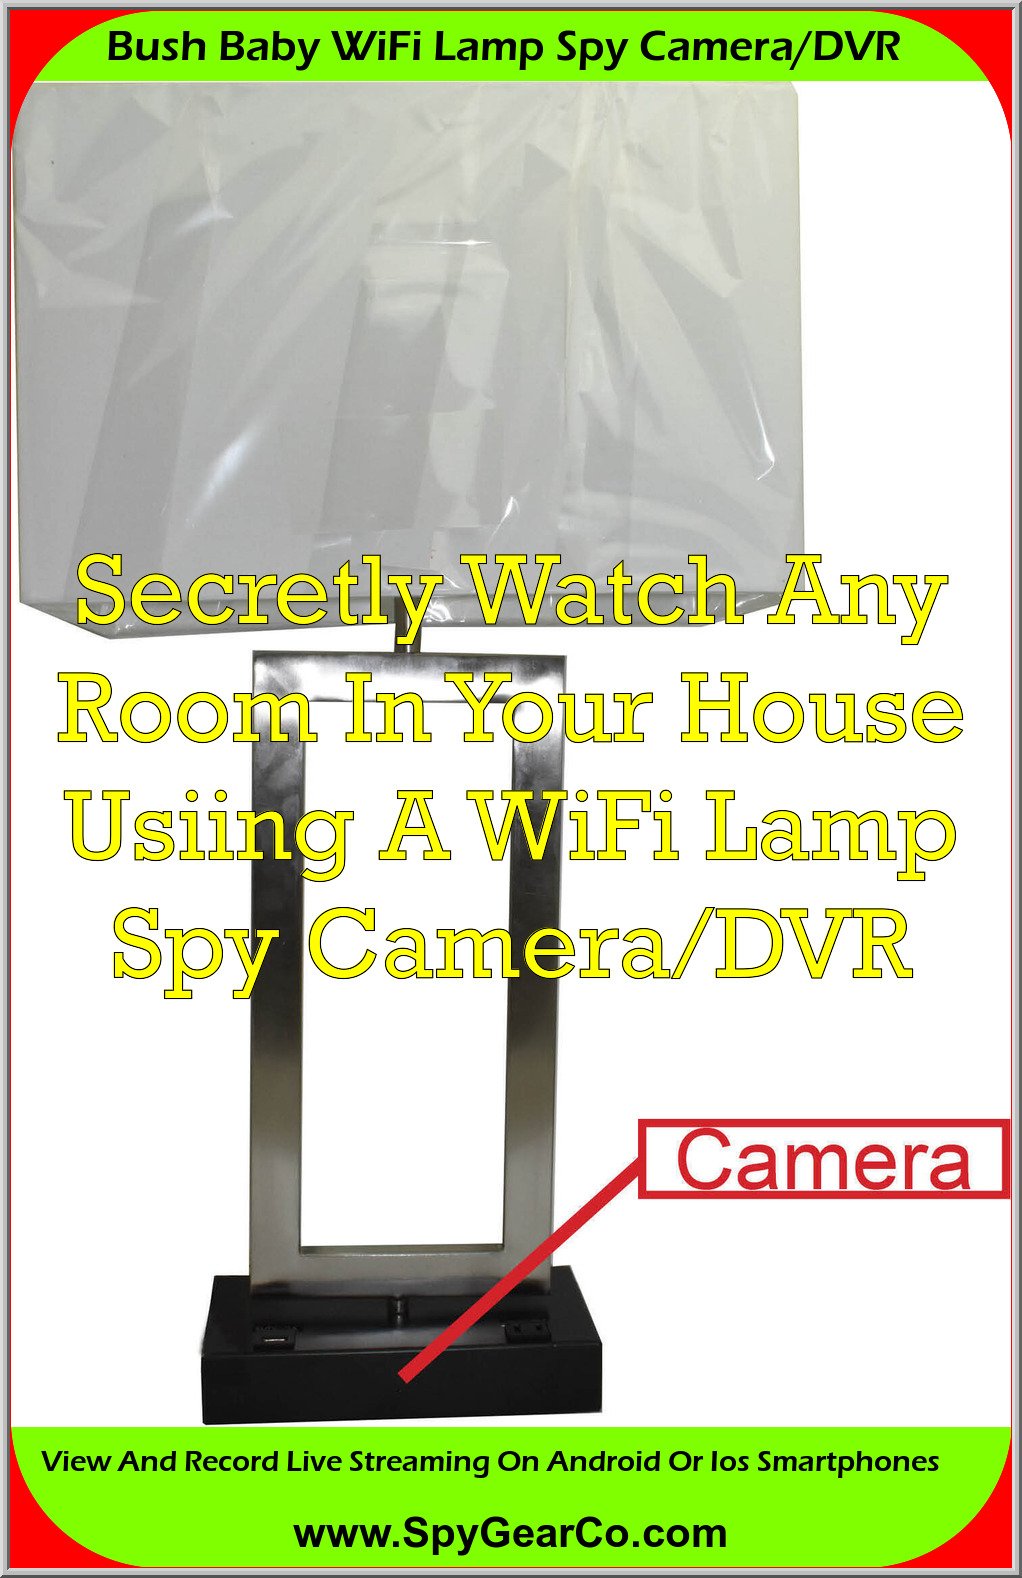 Bush Baby WiFi Lamp Spy Camera/DVR